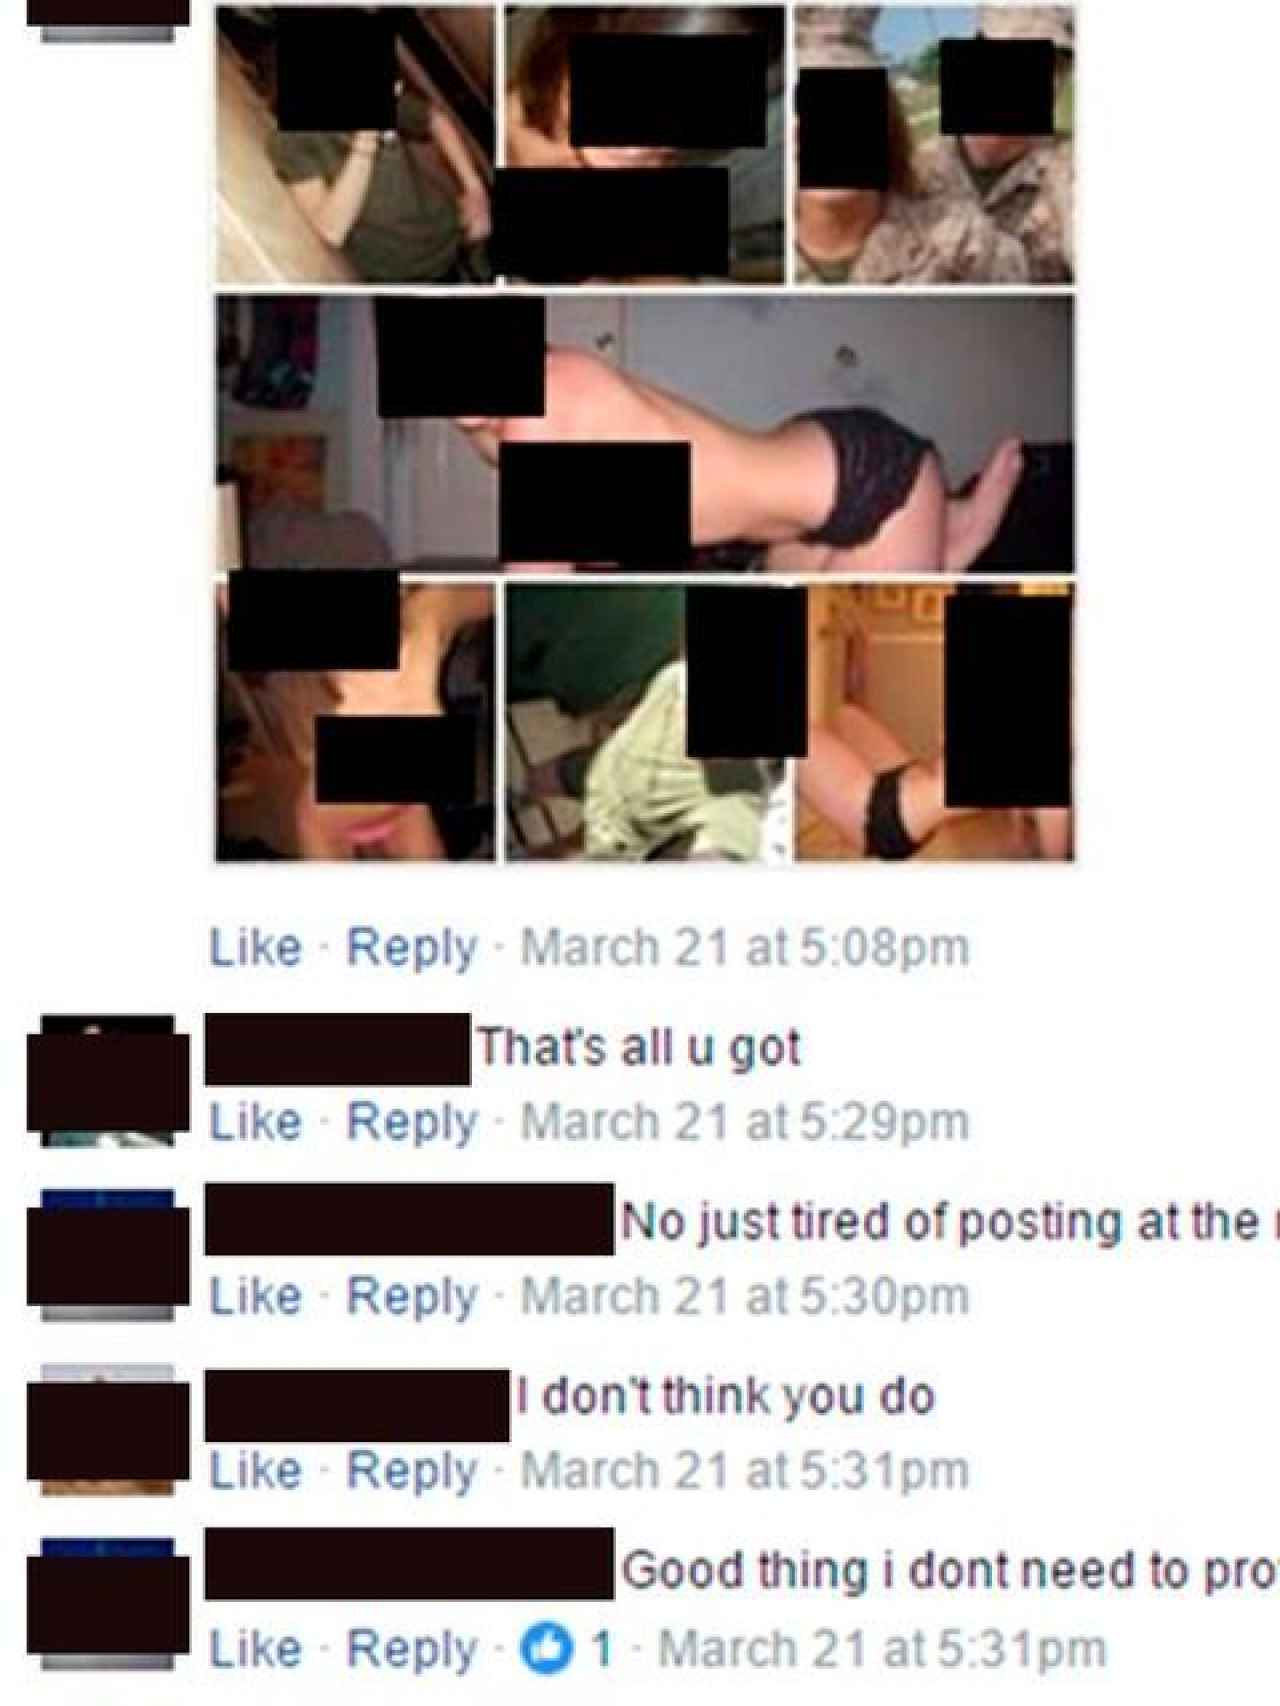 Los militares comentaban fotos de sus colegas desnudas.